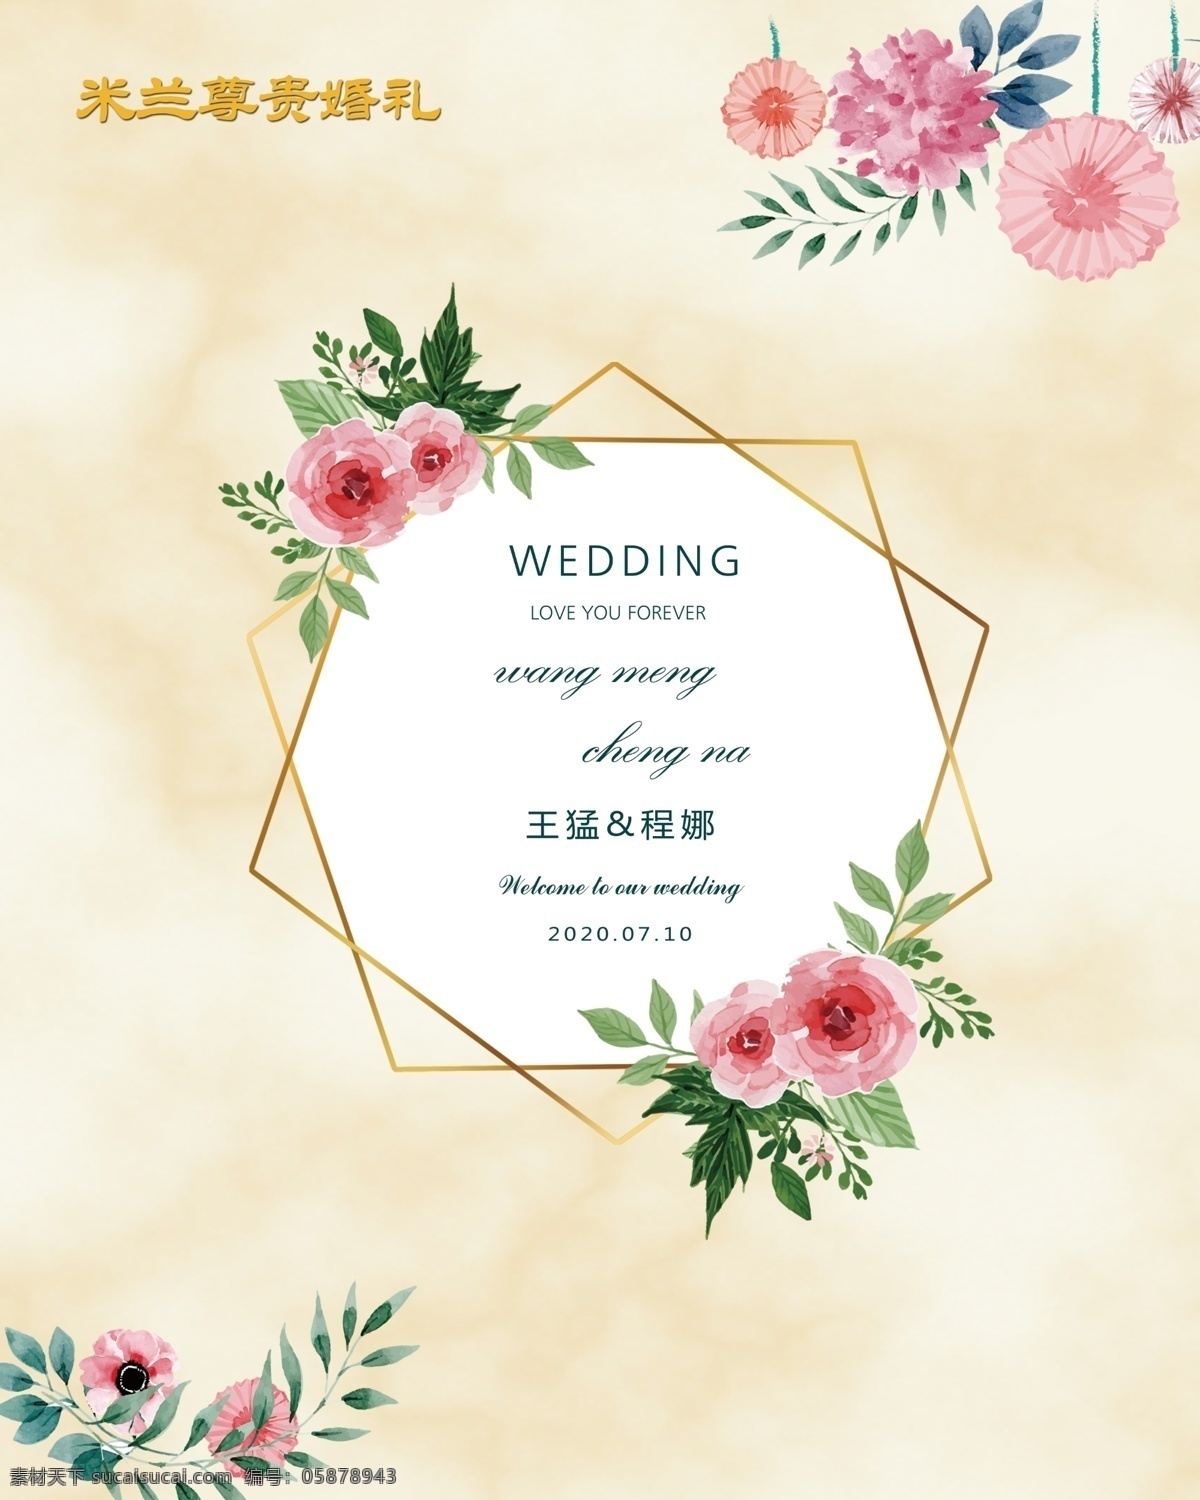 婚礼侧背景 香槟色大理石 logo 小清新 婚礼 侧背景